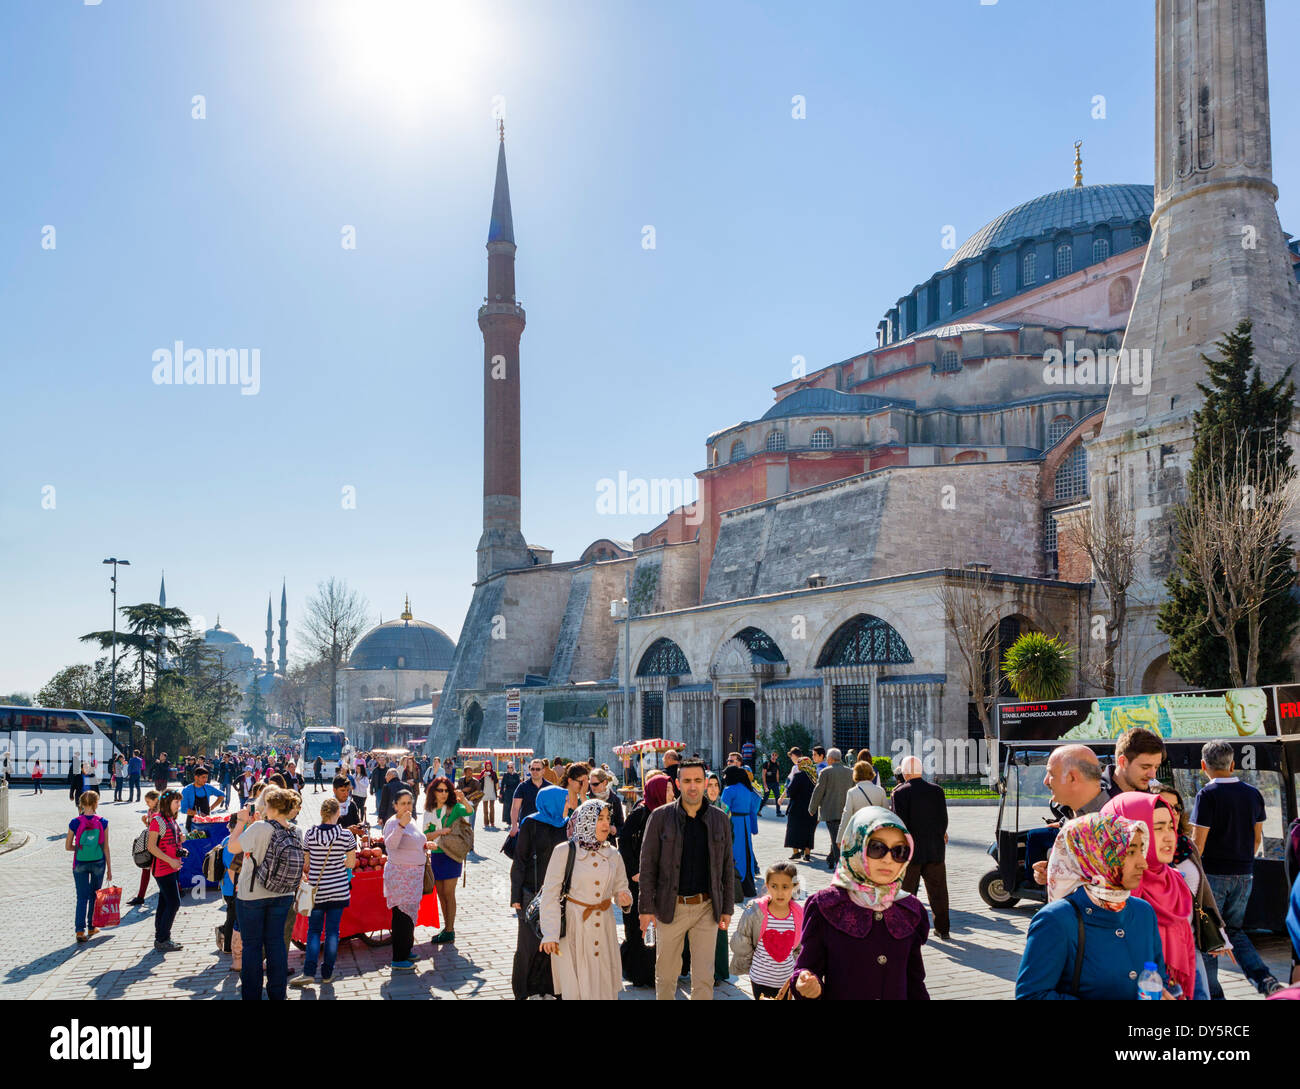 Les foules sur Kabasakal Caddesi à côté de Sainte-sophie (Aya Sofya) à la recherche vers la Mosquée Bleue (Sultanahmet Camii), Istanbul, Turquie Banque D'Images